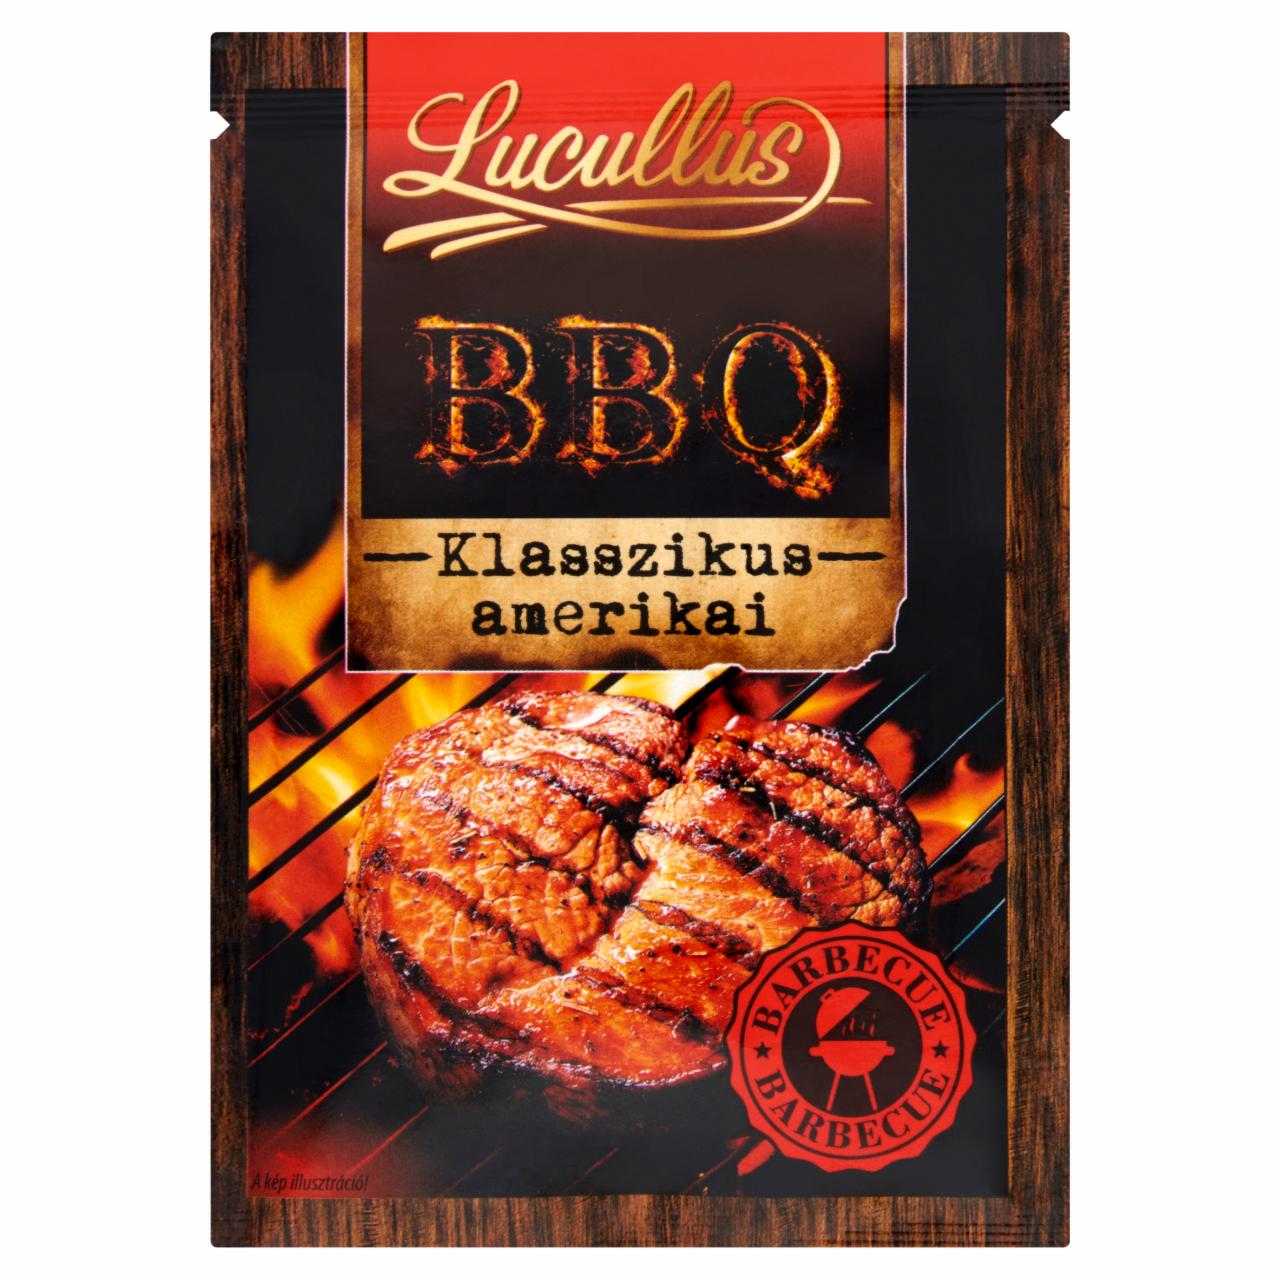 Képek - Lucullus BBQ klasszikus amerikai fűszerkeverék 33 g